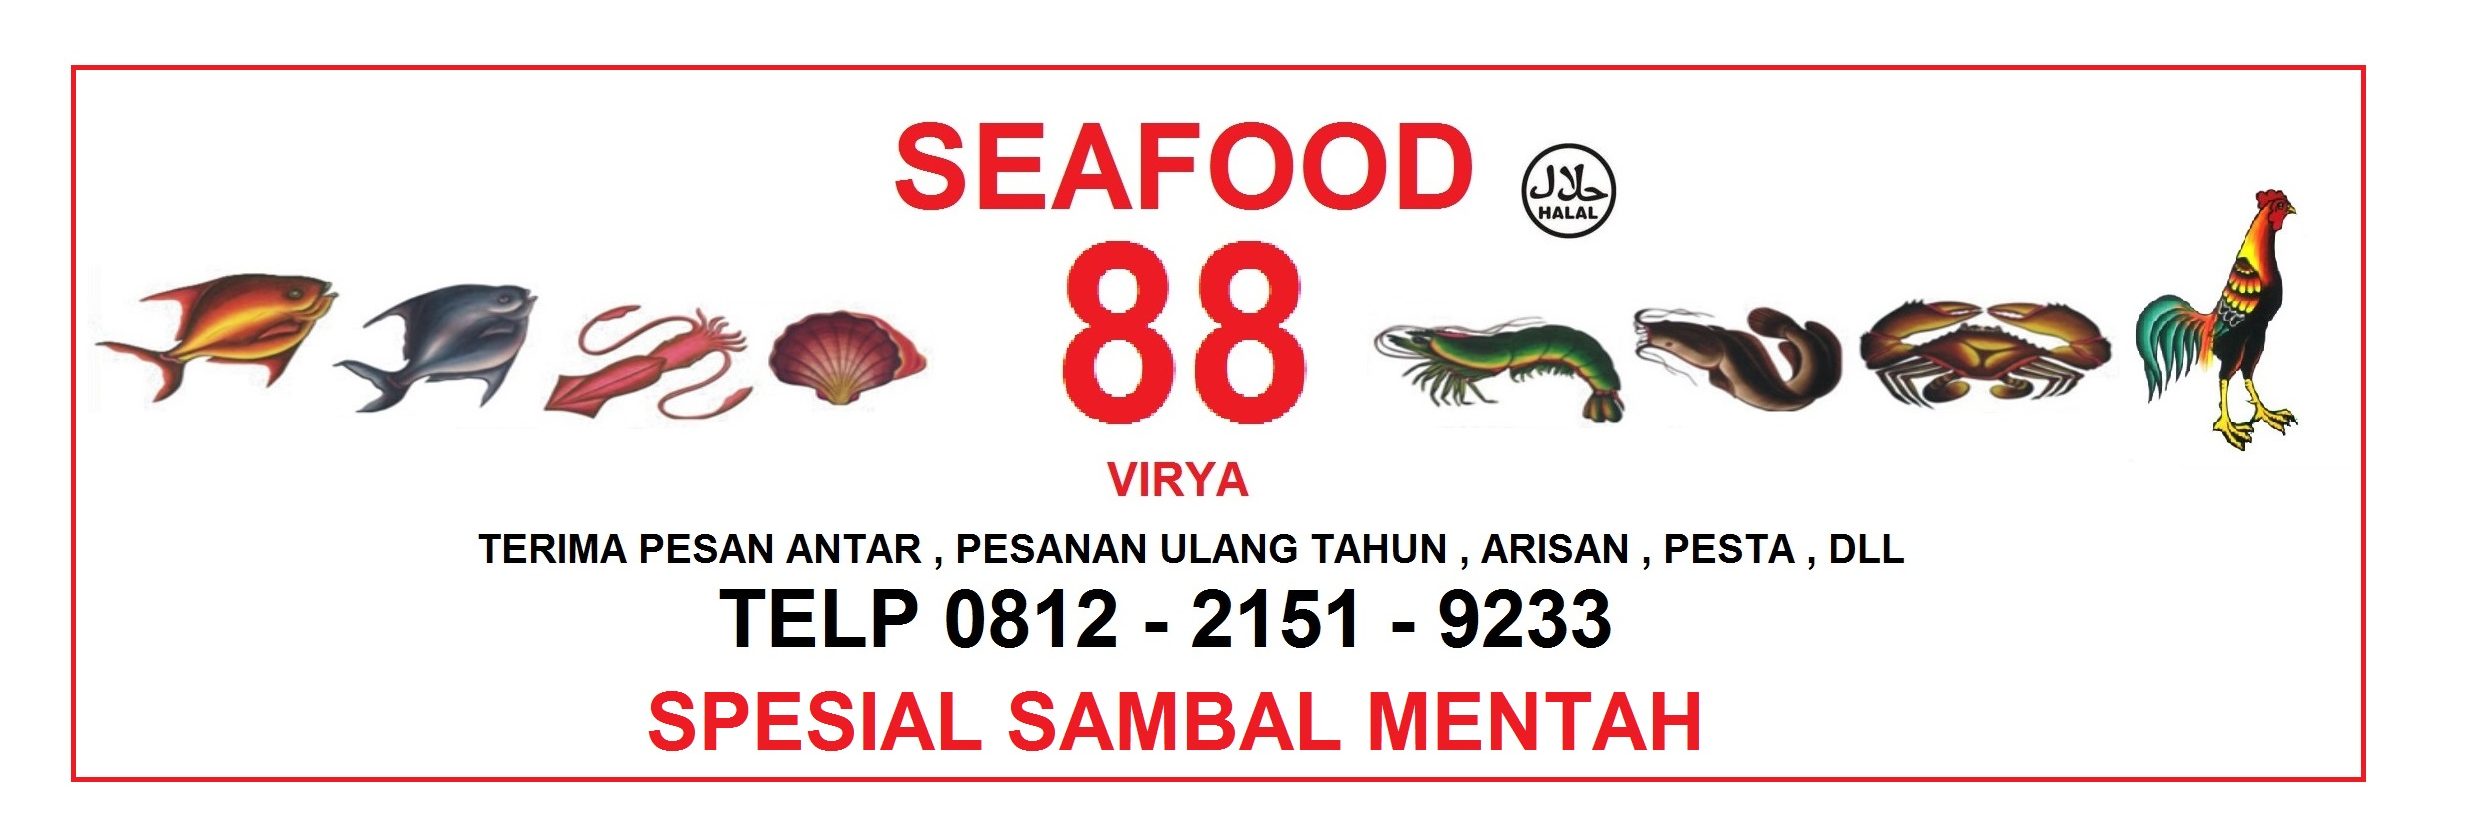 Warung Seafood 88 "Virya"